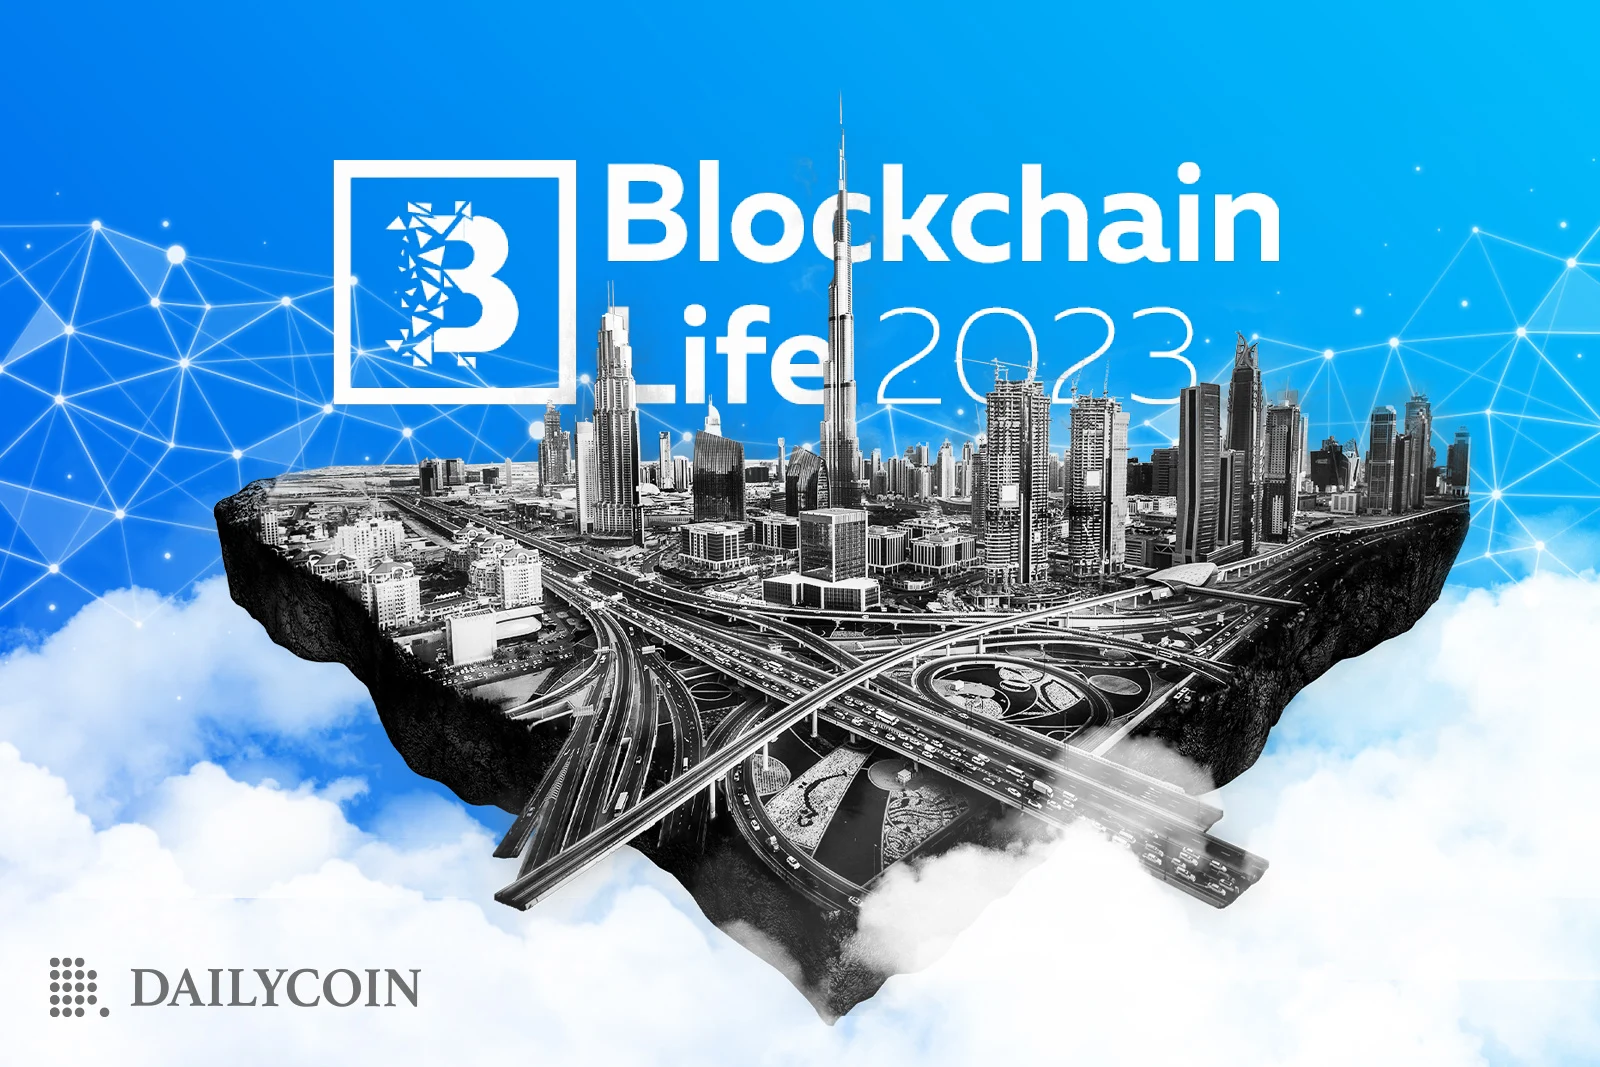 Dubai's Blockchain Life 2023 A Center for Innovation